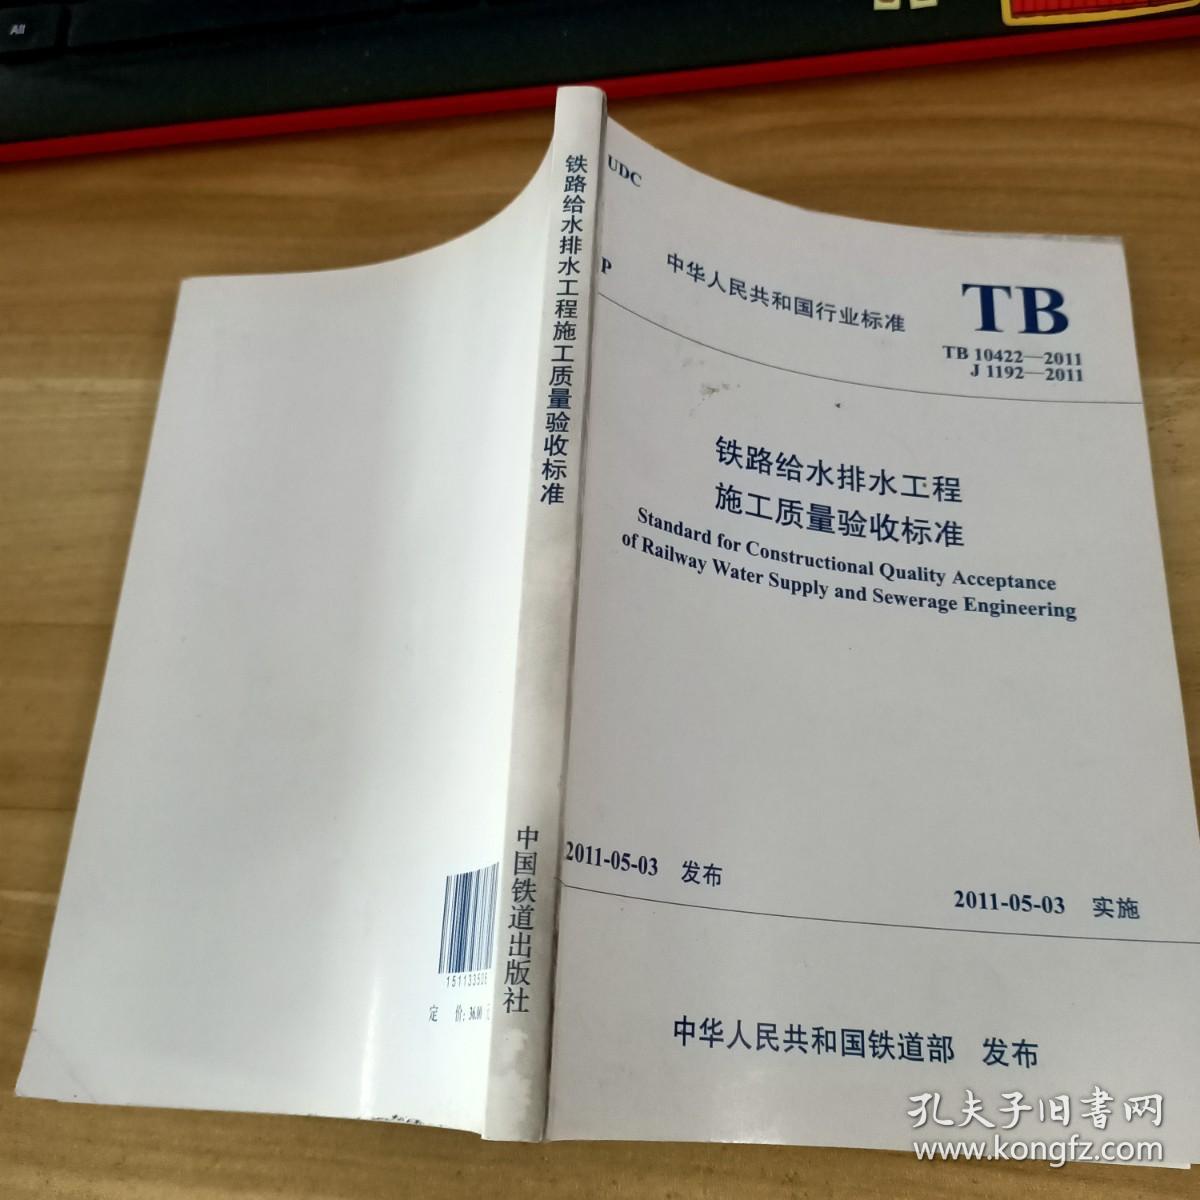 中华人民共和国行业标准：TB 10422-2011 J 1192-2011 铁路给水排水工程施工质量验收标准